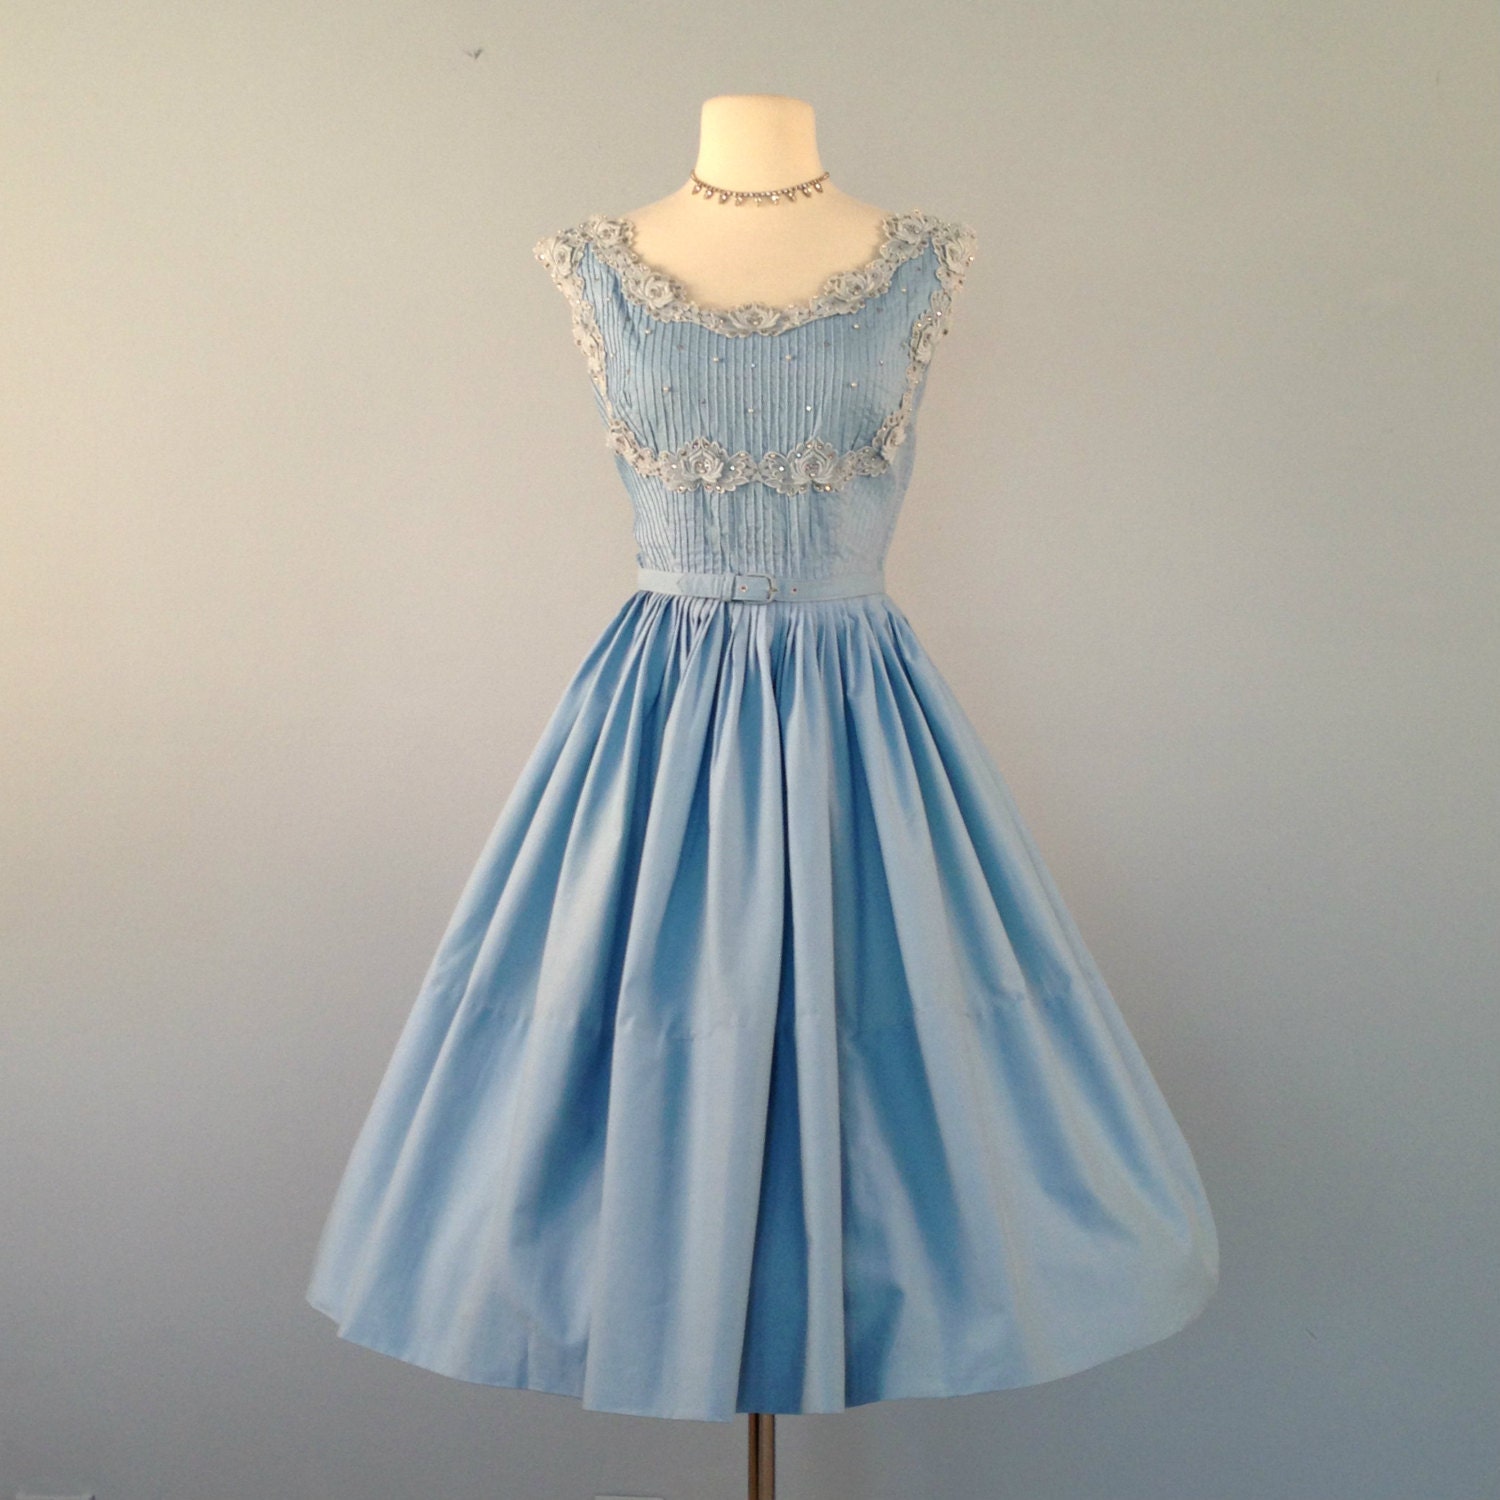 Vintage 1950s Party Dress...Beautiful Blue Cotton Party Dress